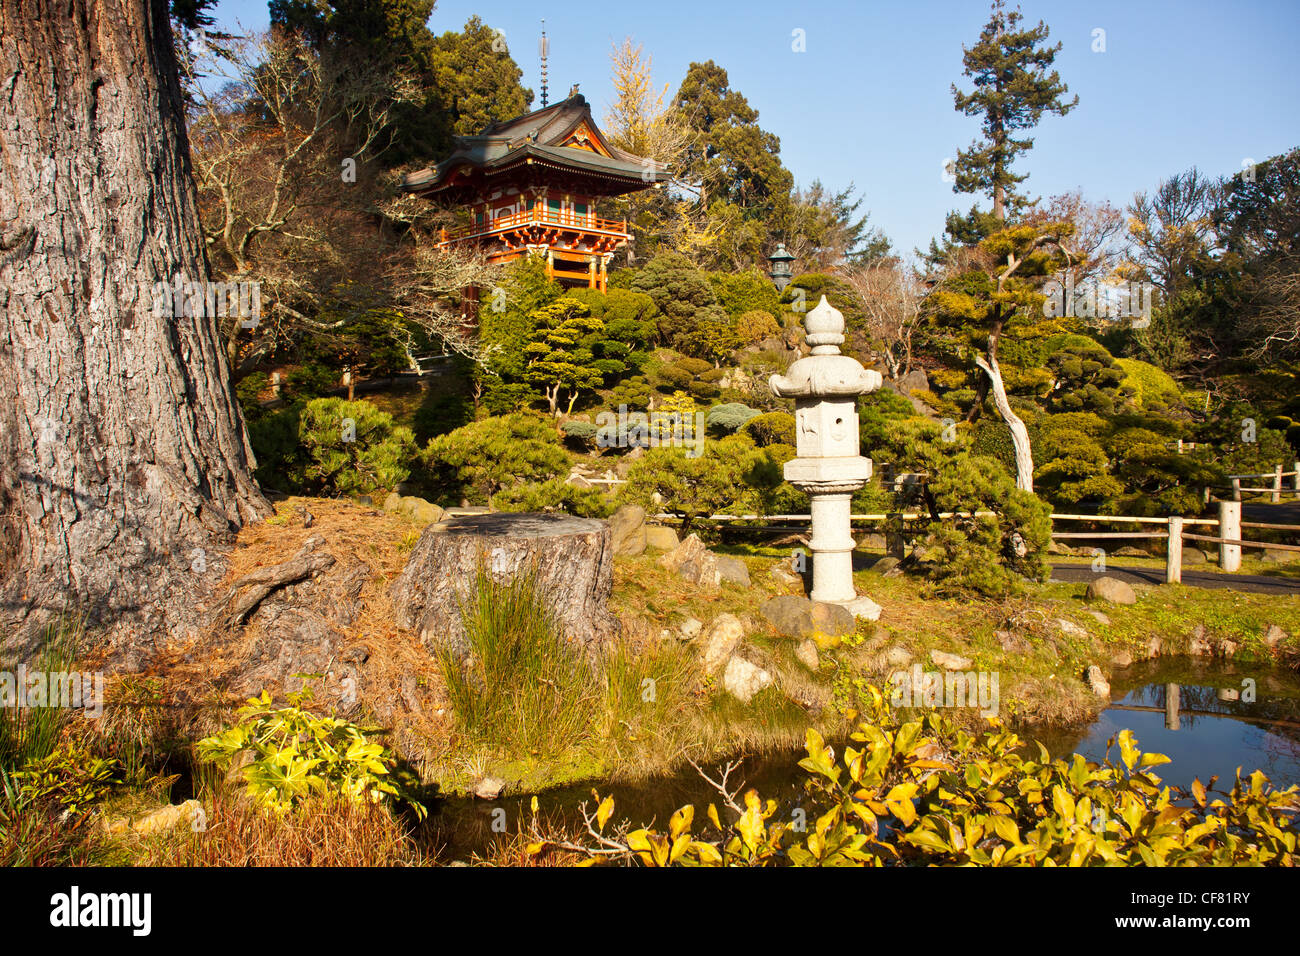 Les jardins japonais dans le golden gate Park, San Francisco, Californie, USA. Banque D'Images